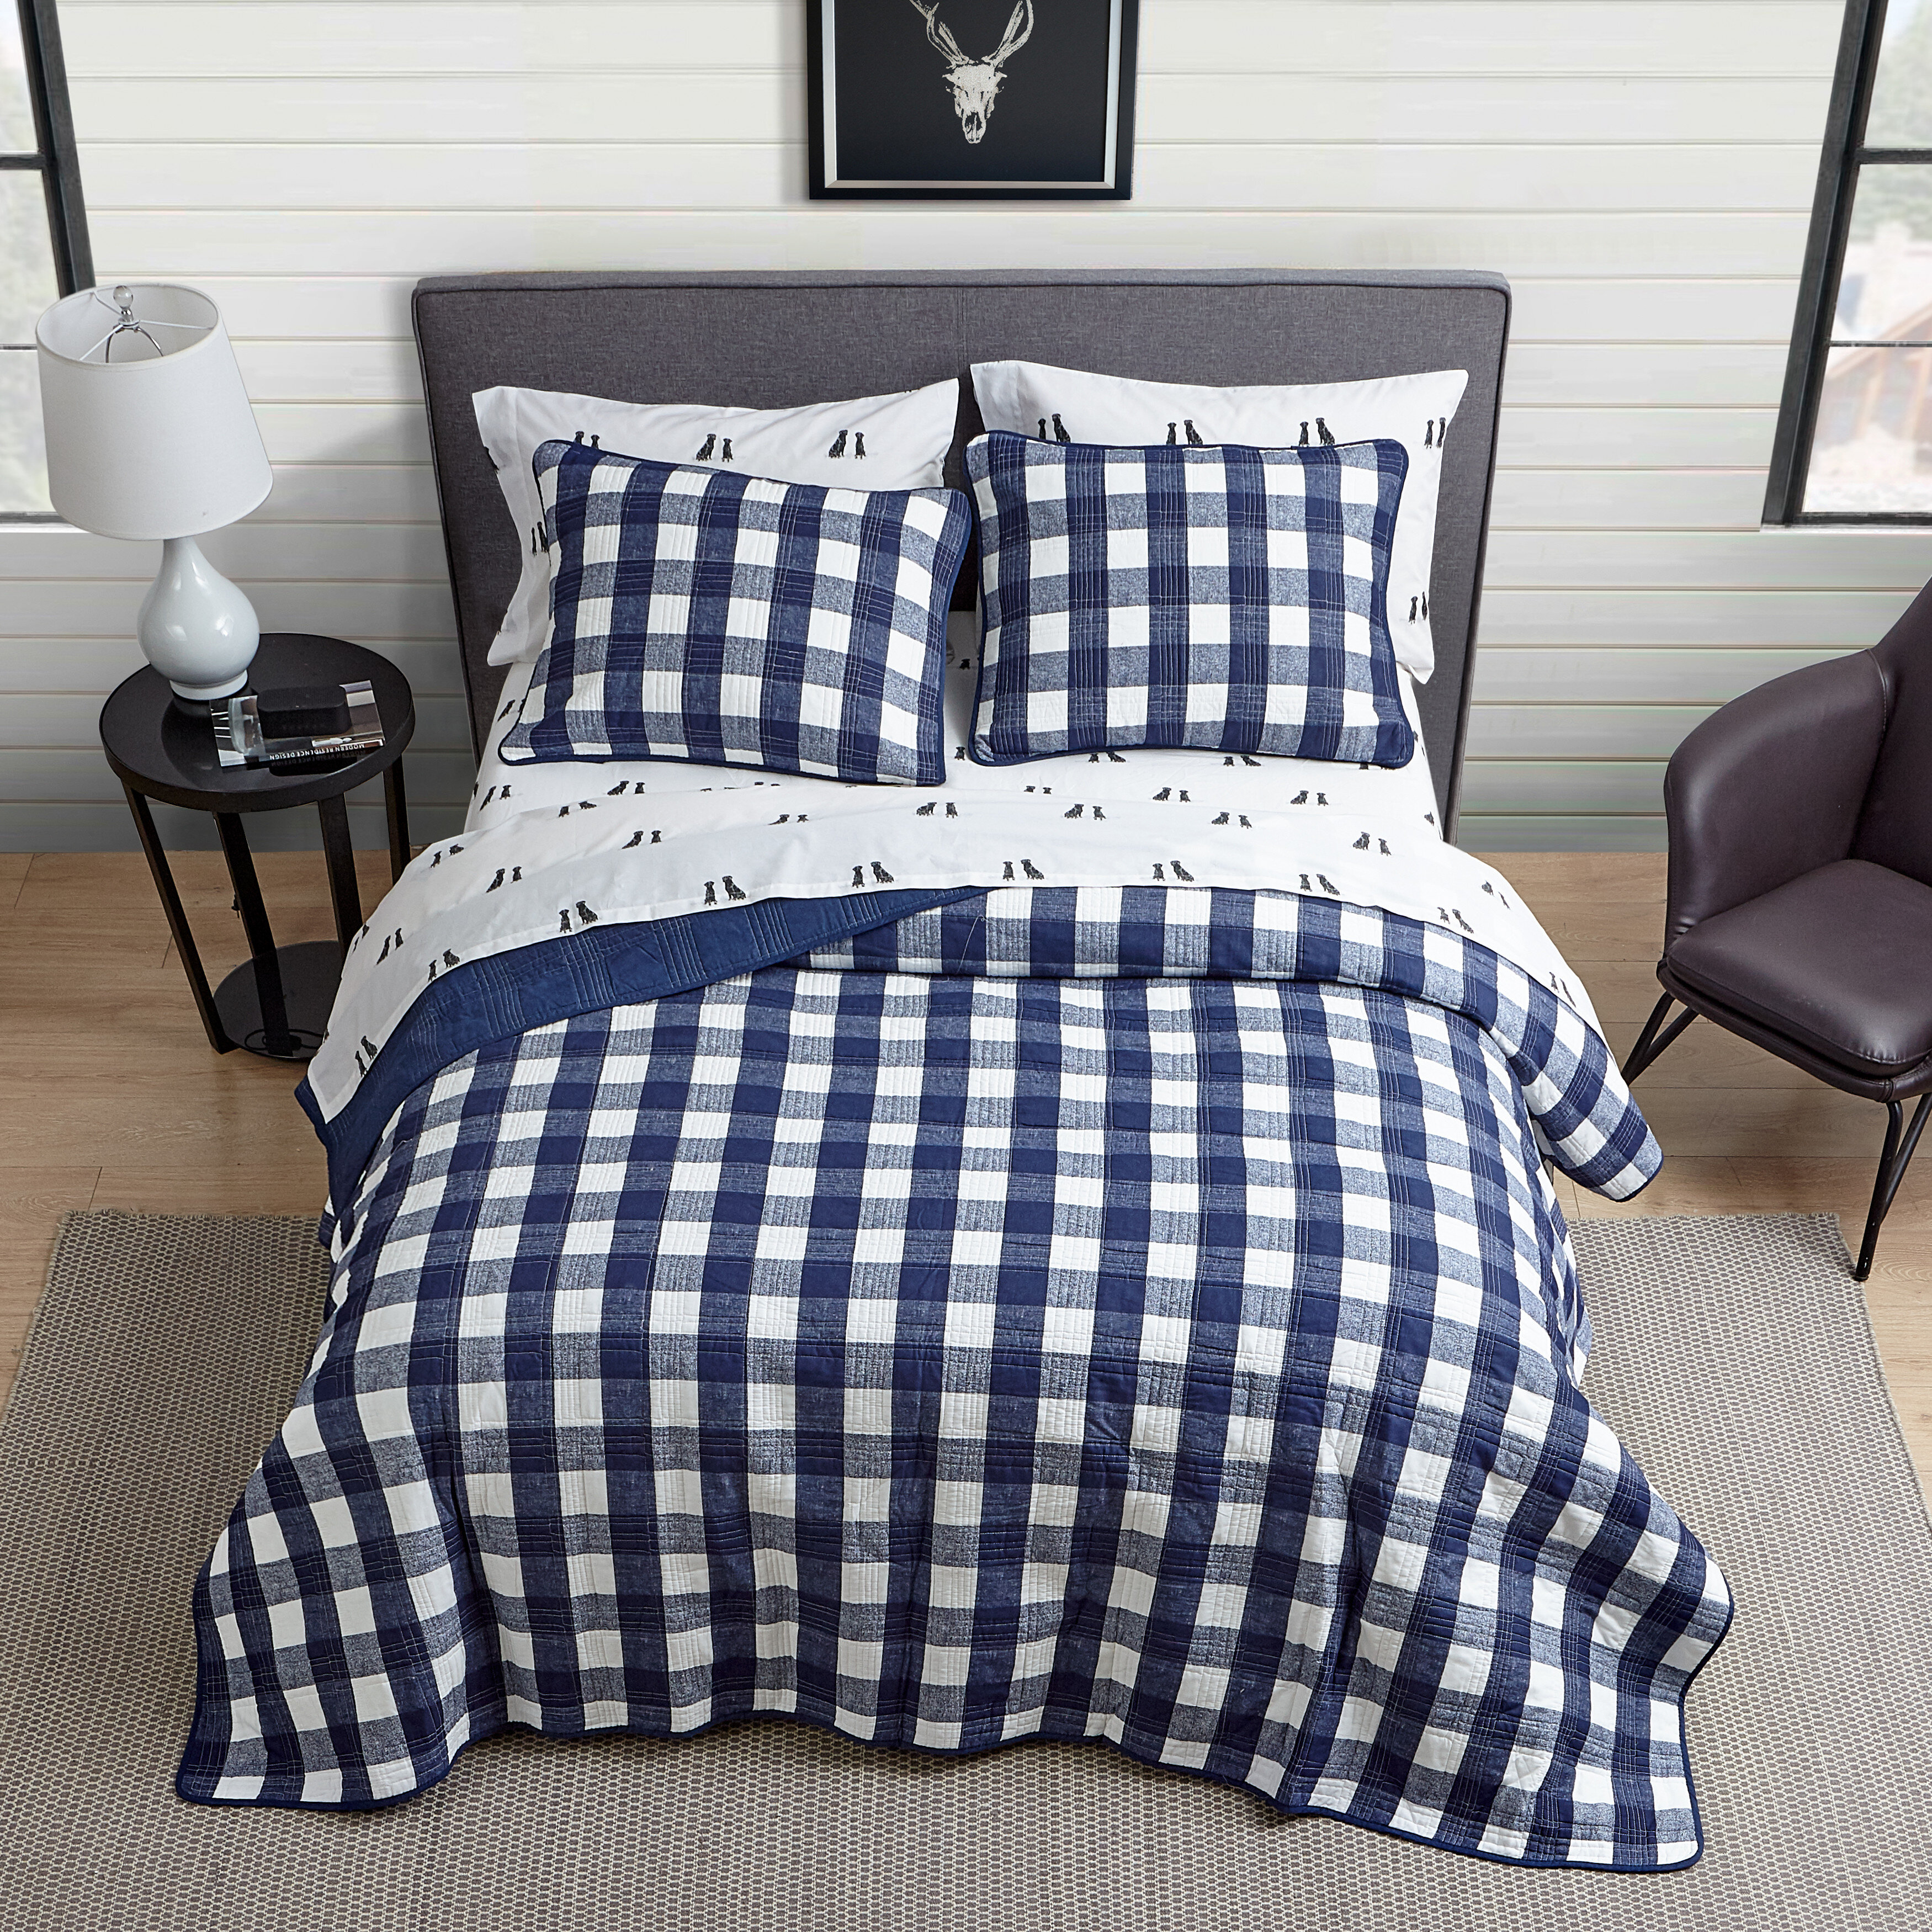 Plaid Comforter Baseball Set Plaid Blue White Bedding Polyester Teen Full Size 